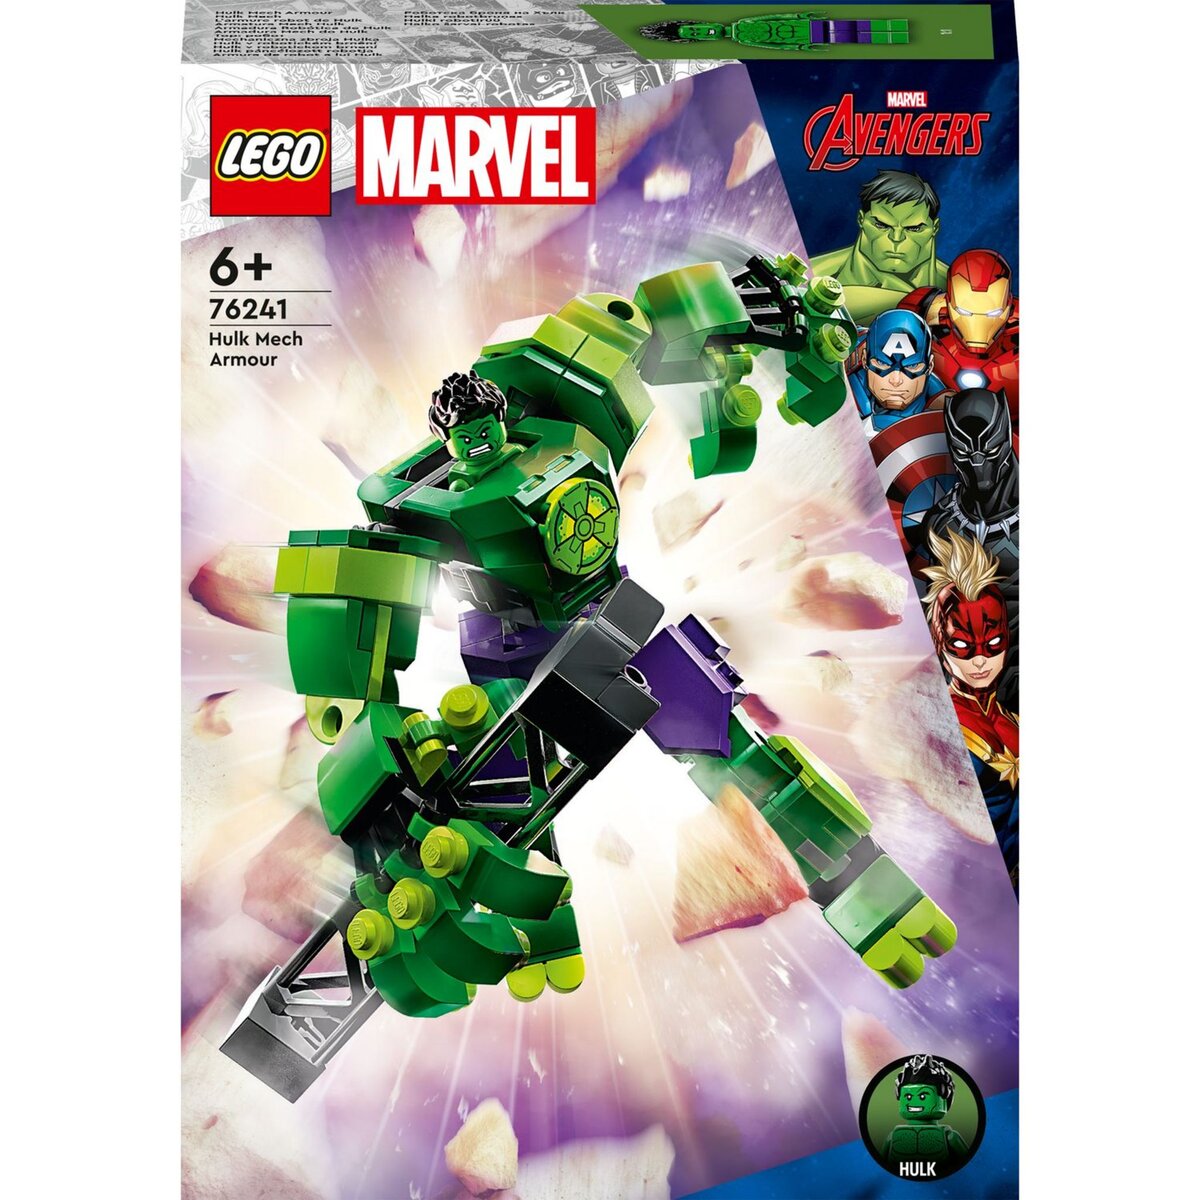 Marvel 76243 L'armure robot de Rocket, Figurine Gardiens de la Galaxie,  Jouet Raton Laveur, Avengers